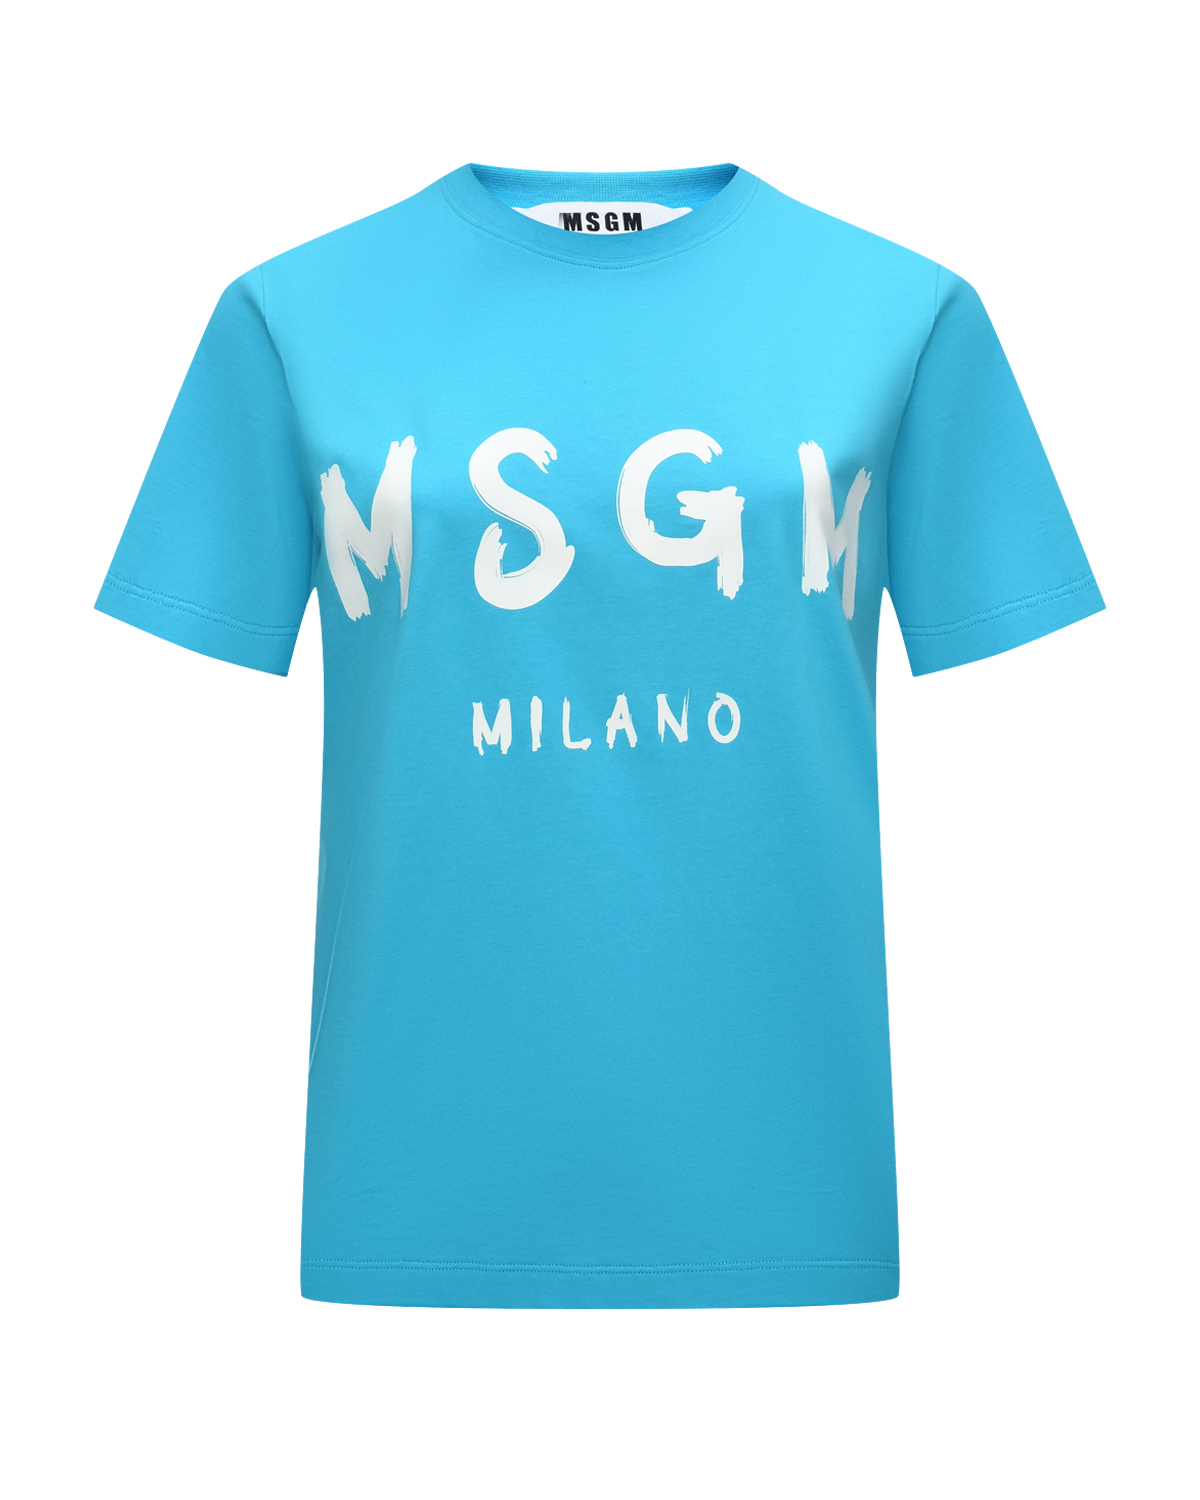 Футболка с крупным лого, голубая MSGM футболка с крупным лого голубая msgm